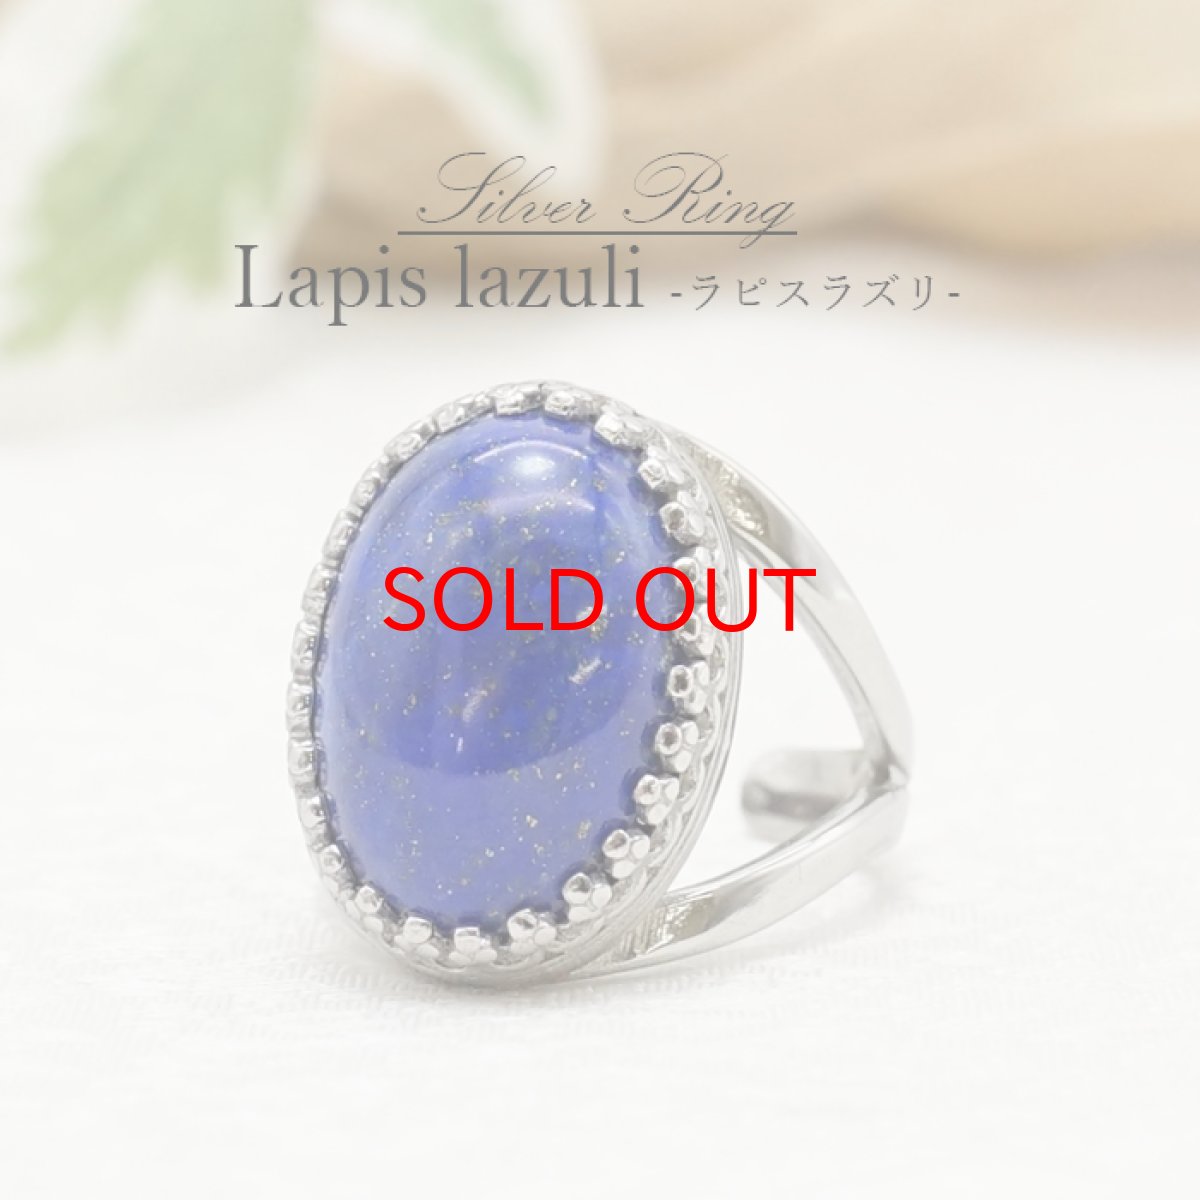 画像1: 【一点もの】 ラピスラズリ リング アフガニスタン産 Lapis lazuli シルバー 瑠璃 浄化 指輪 お守り 天然石 パワーストーン カラーストーン (1)